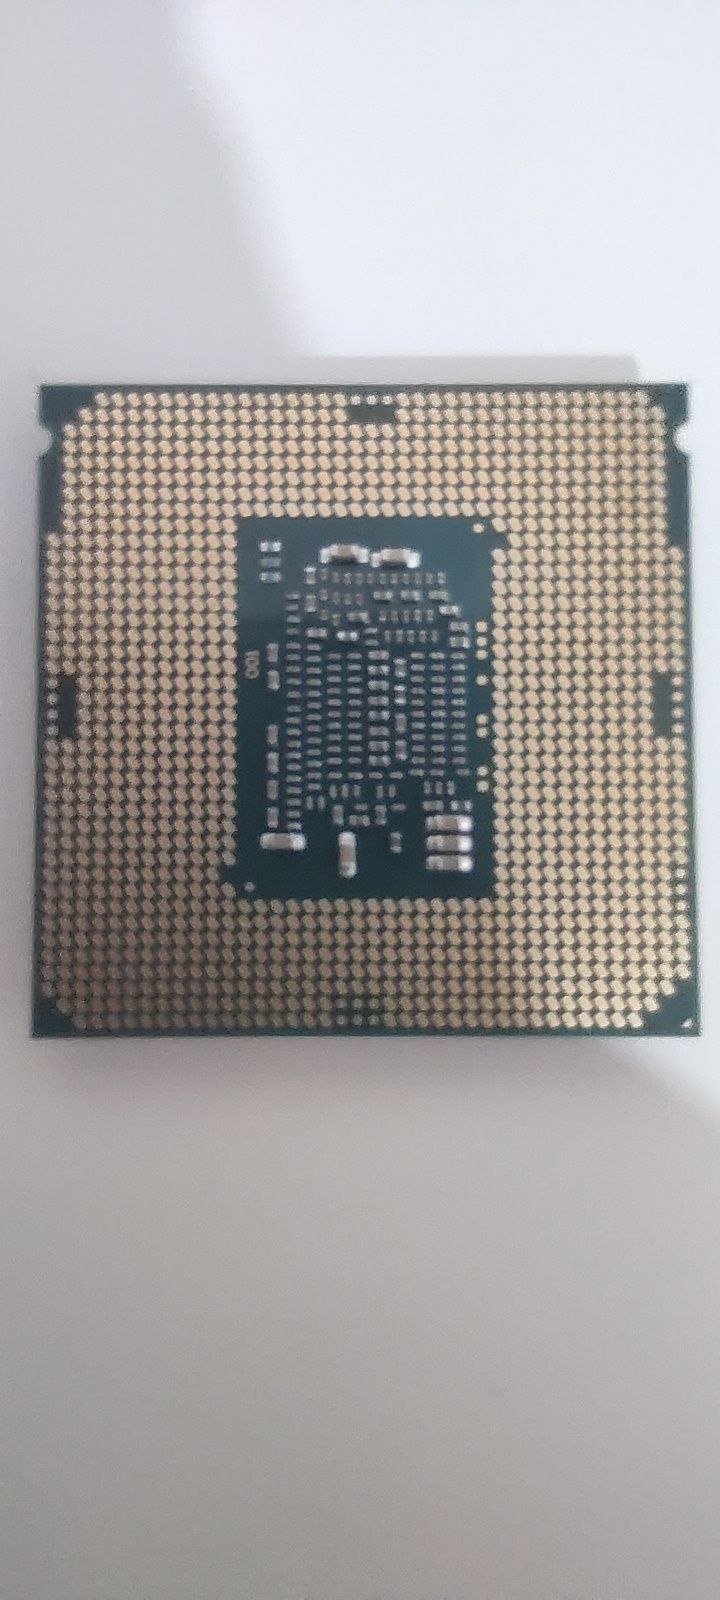 CPU Intel i5 6500